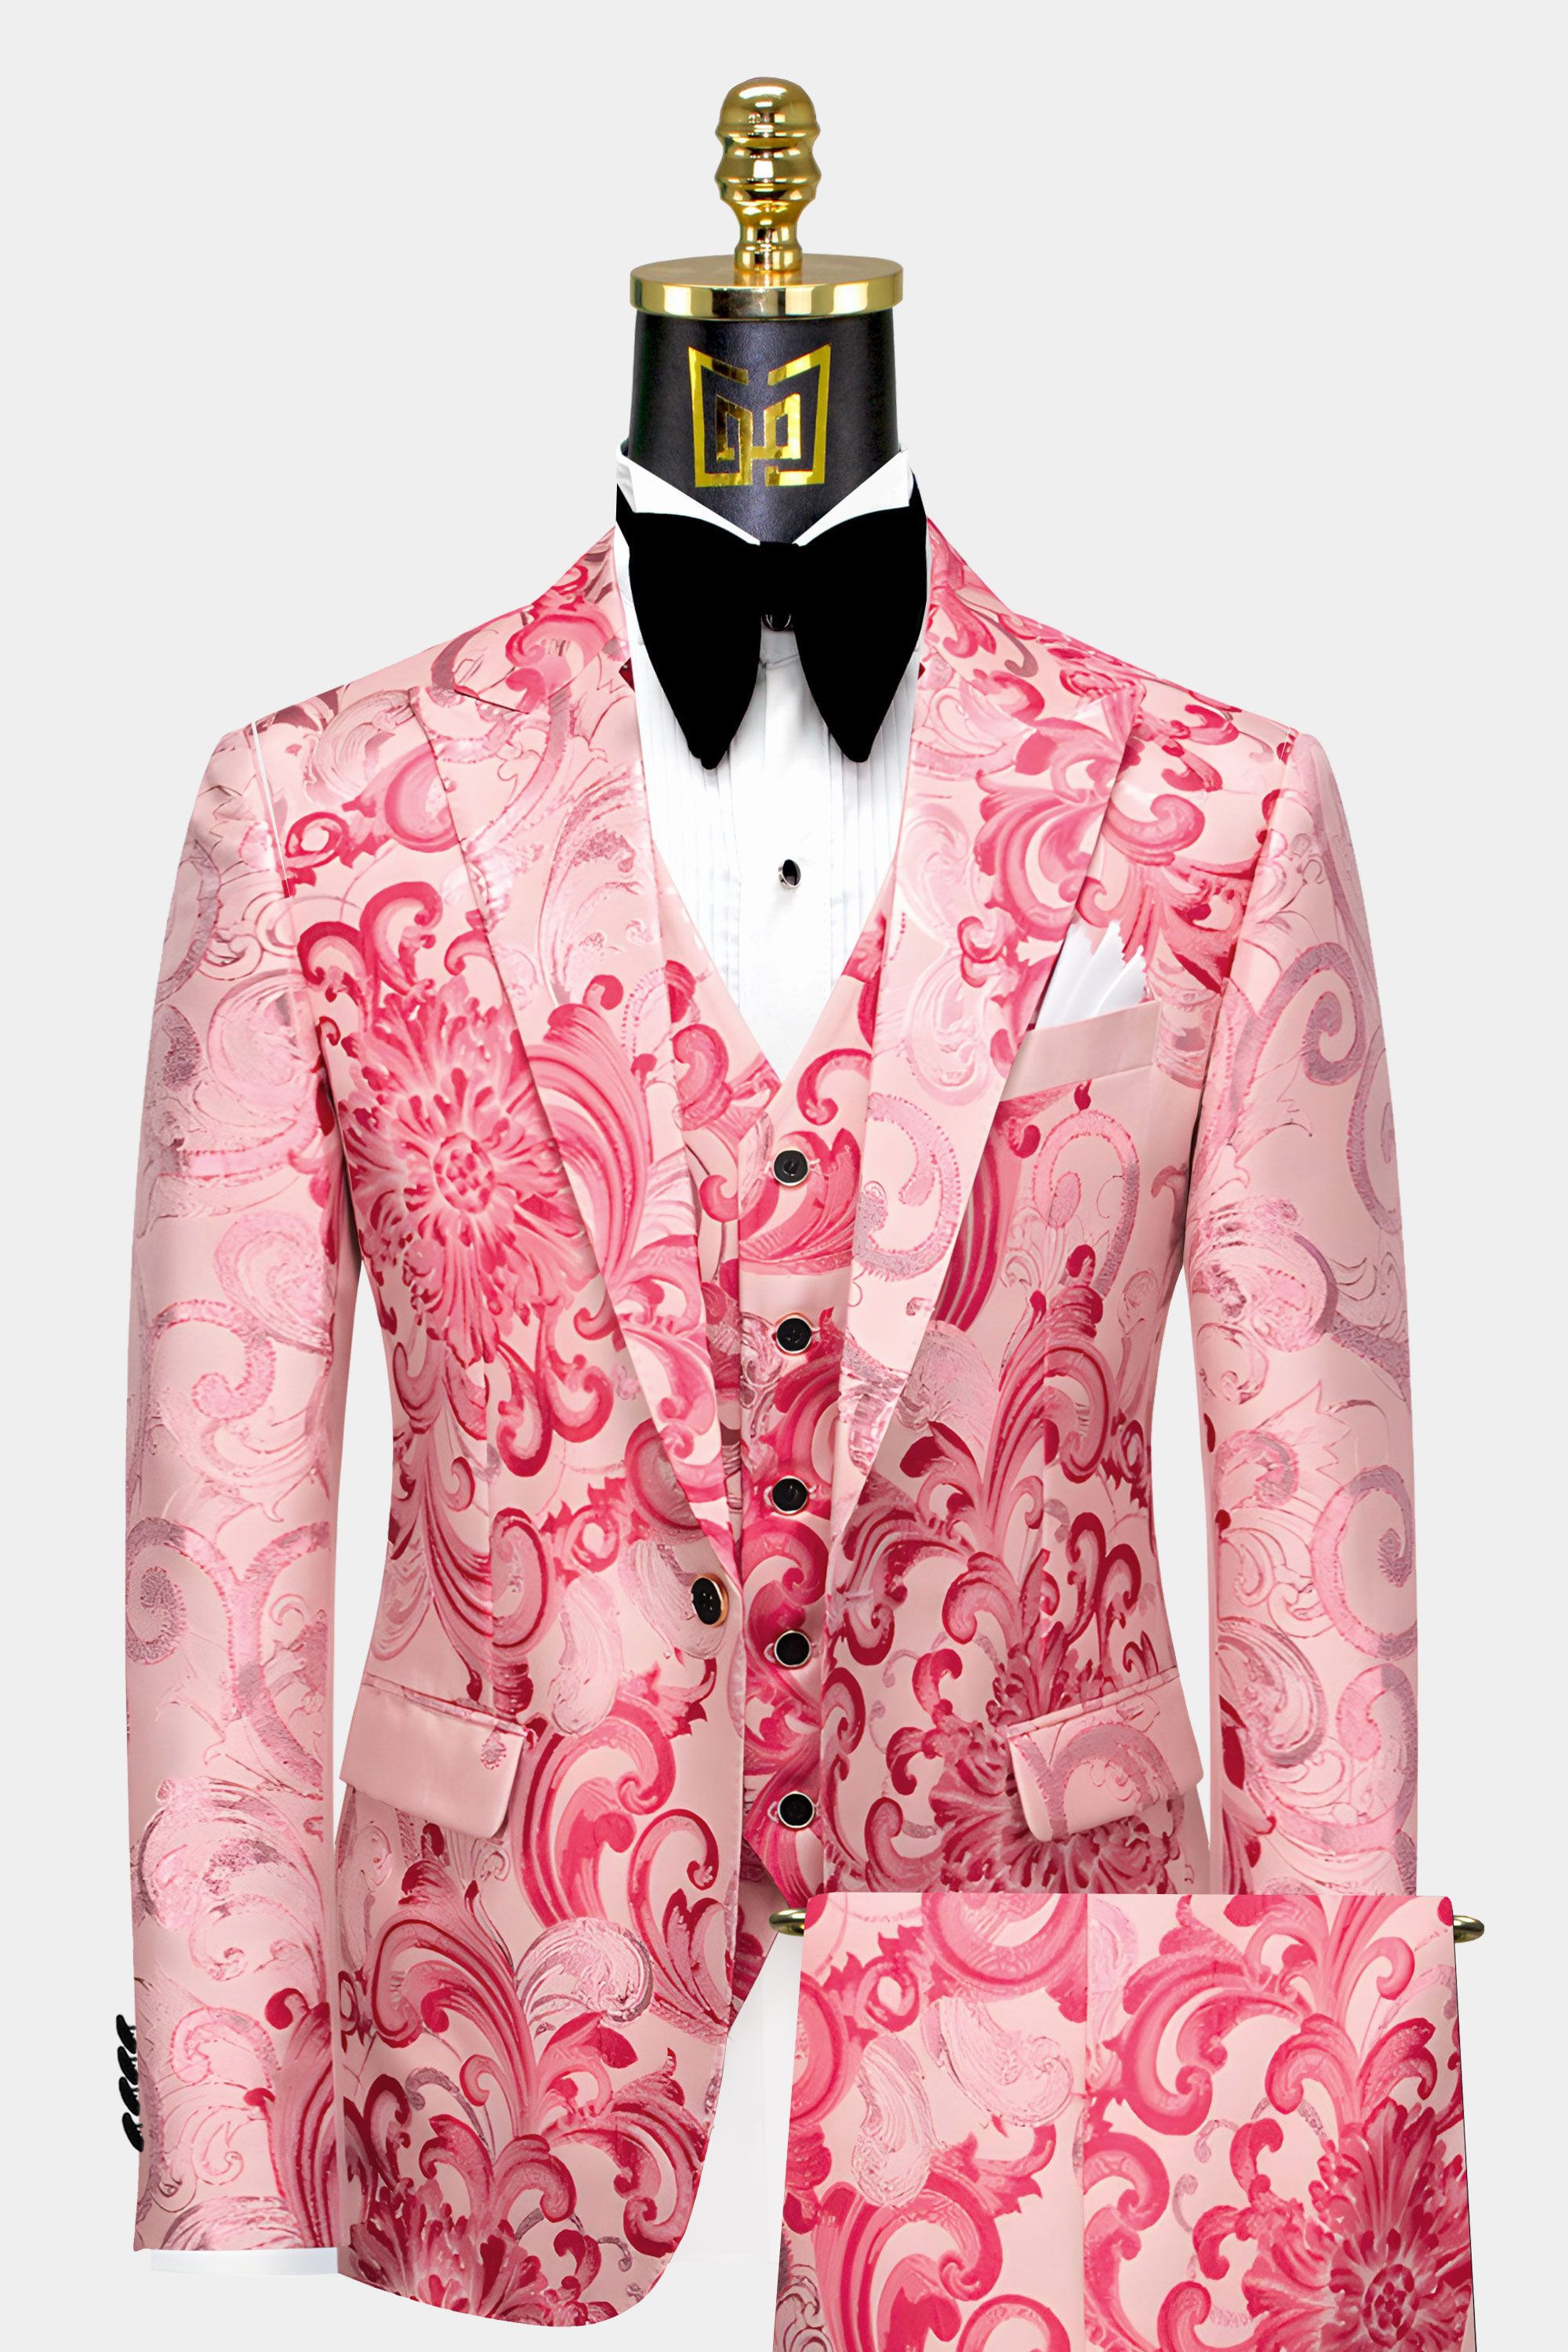 Baroque-Mens-Pink-Floral-Suit- Wedding-Groom-Prom-Tuxedo-from-Gentlemansguru.com